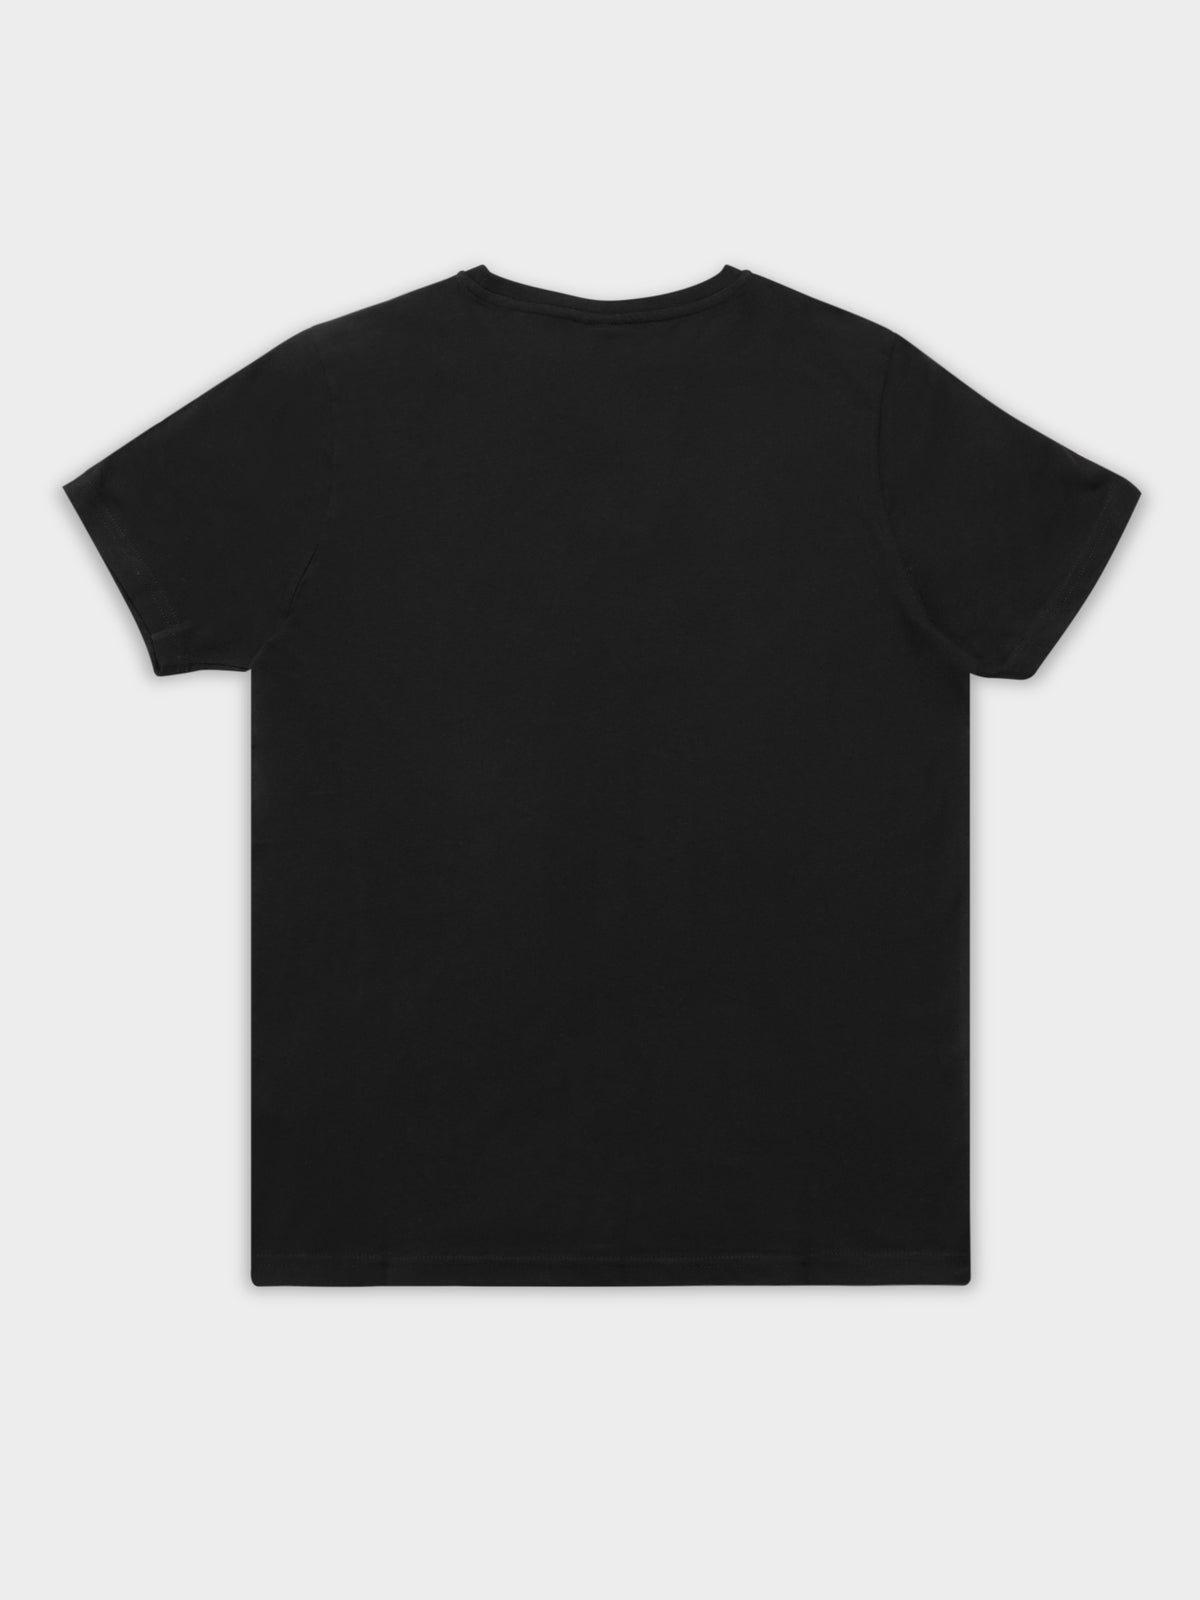 Authentic Estessi T-Shirt in Black